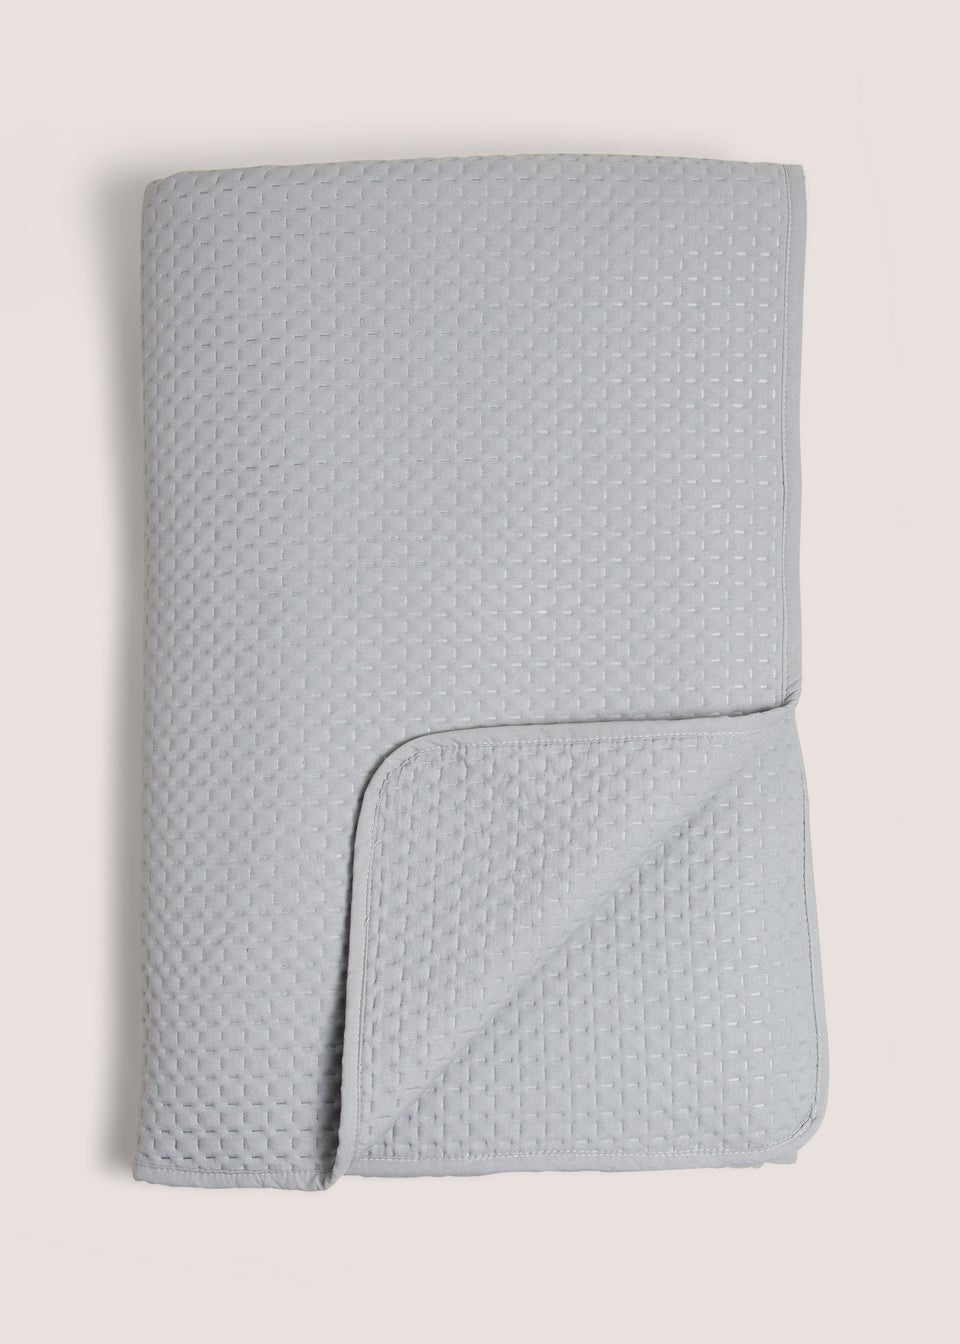 Grey Washed Pinsonic Bedspread (235cm x 235cm)